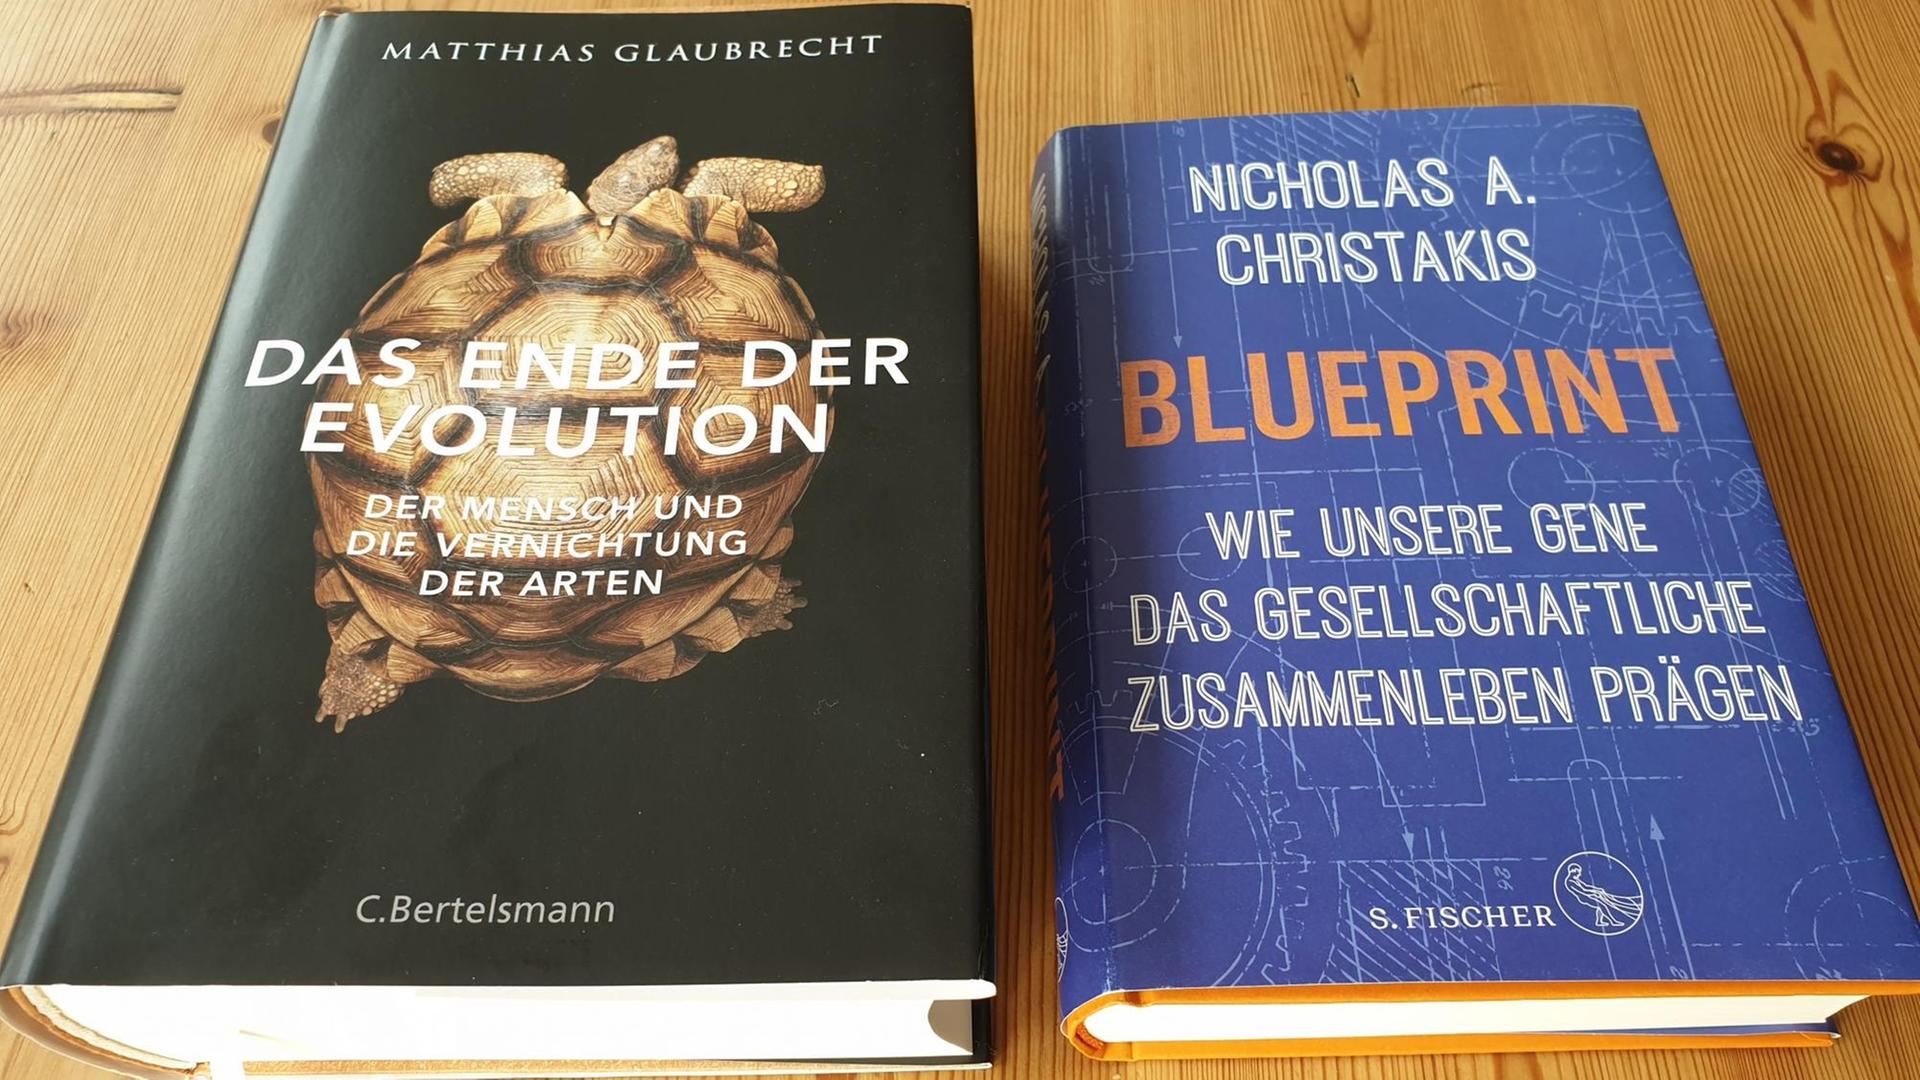 Die Cover der Bücher "Das Ende der Evolution" von Matthias Glaubrecht und "Blueprint" von Nicholas Christakis.